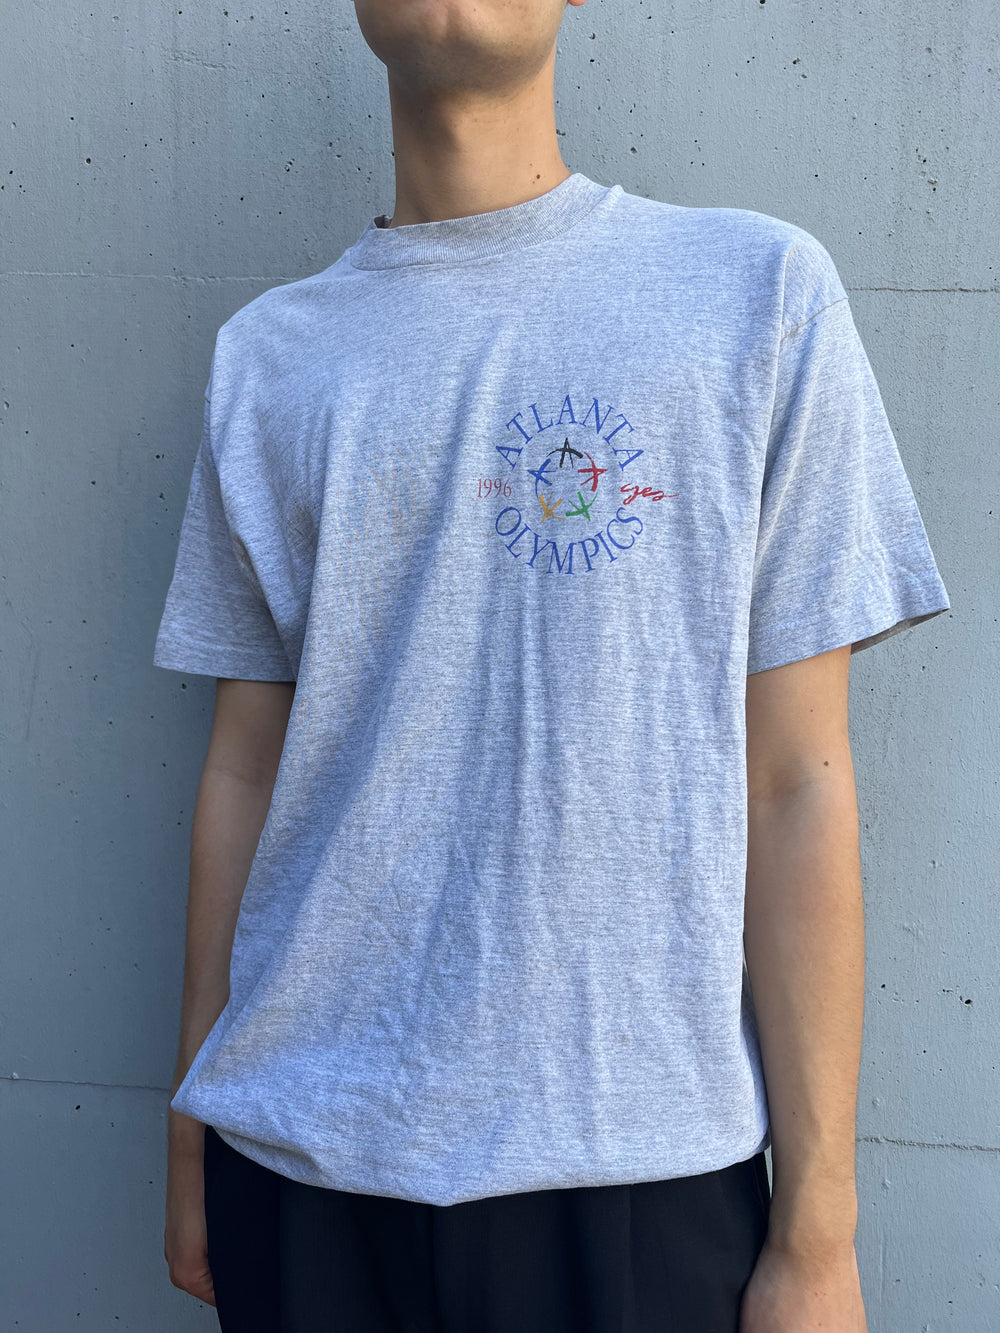 Vintage 1996 Atlanta Olympics T-Shirt (XL)